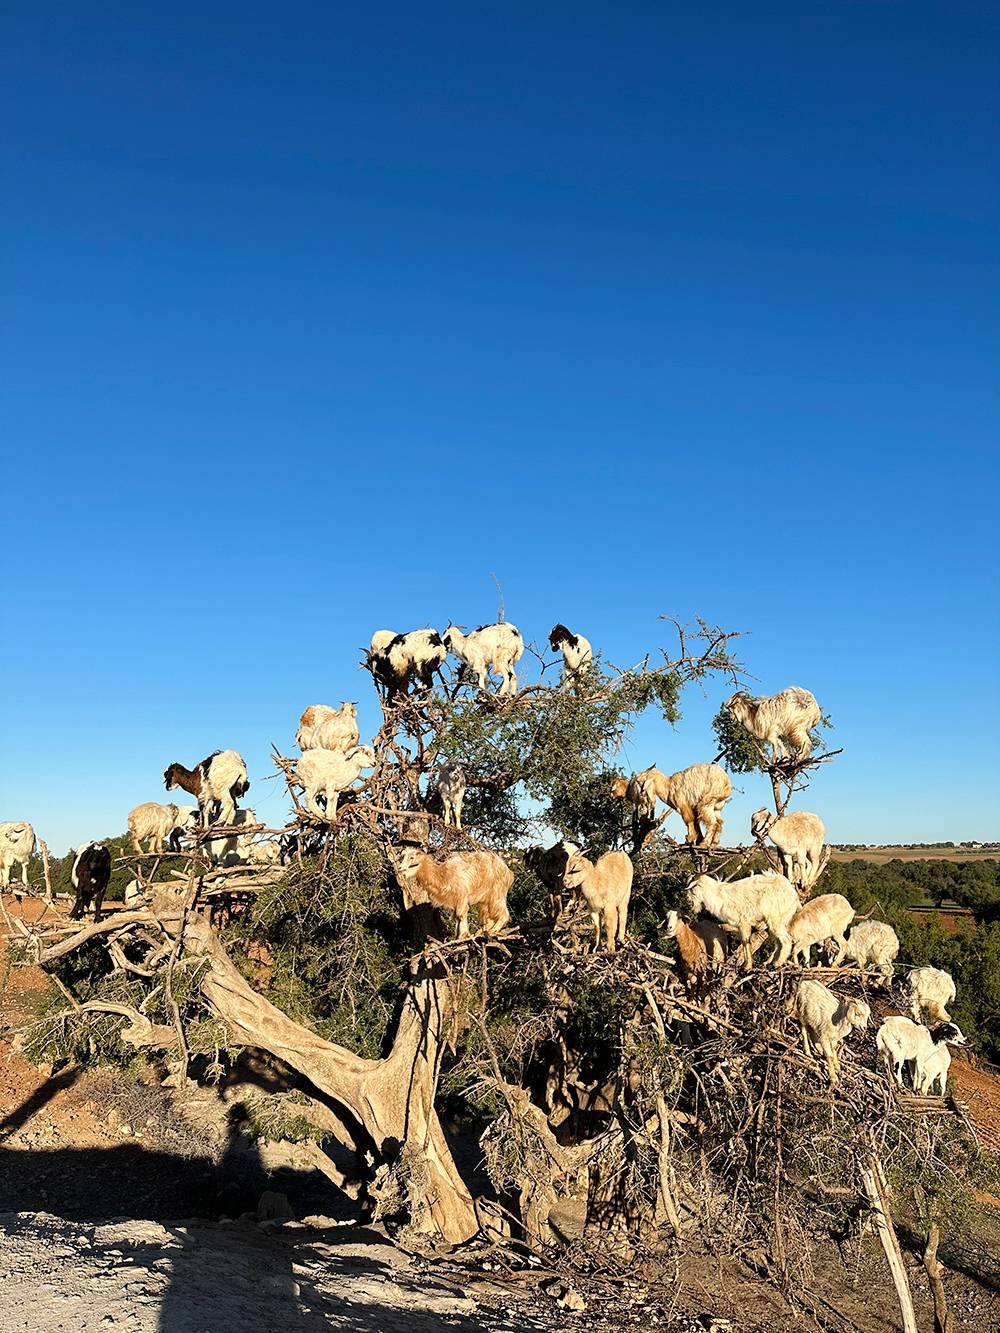 Степи Марокко известны своими козами, пасущимися прямо на деревьях. Стоило нам остановиться для&nbsp;фото — сразу подбежали какие-то парни просить денег